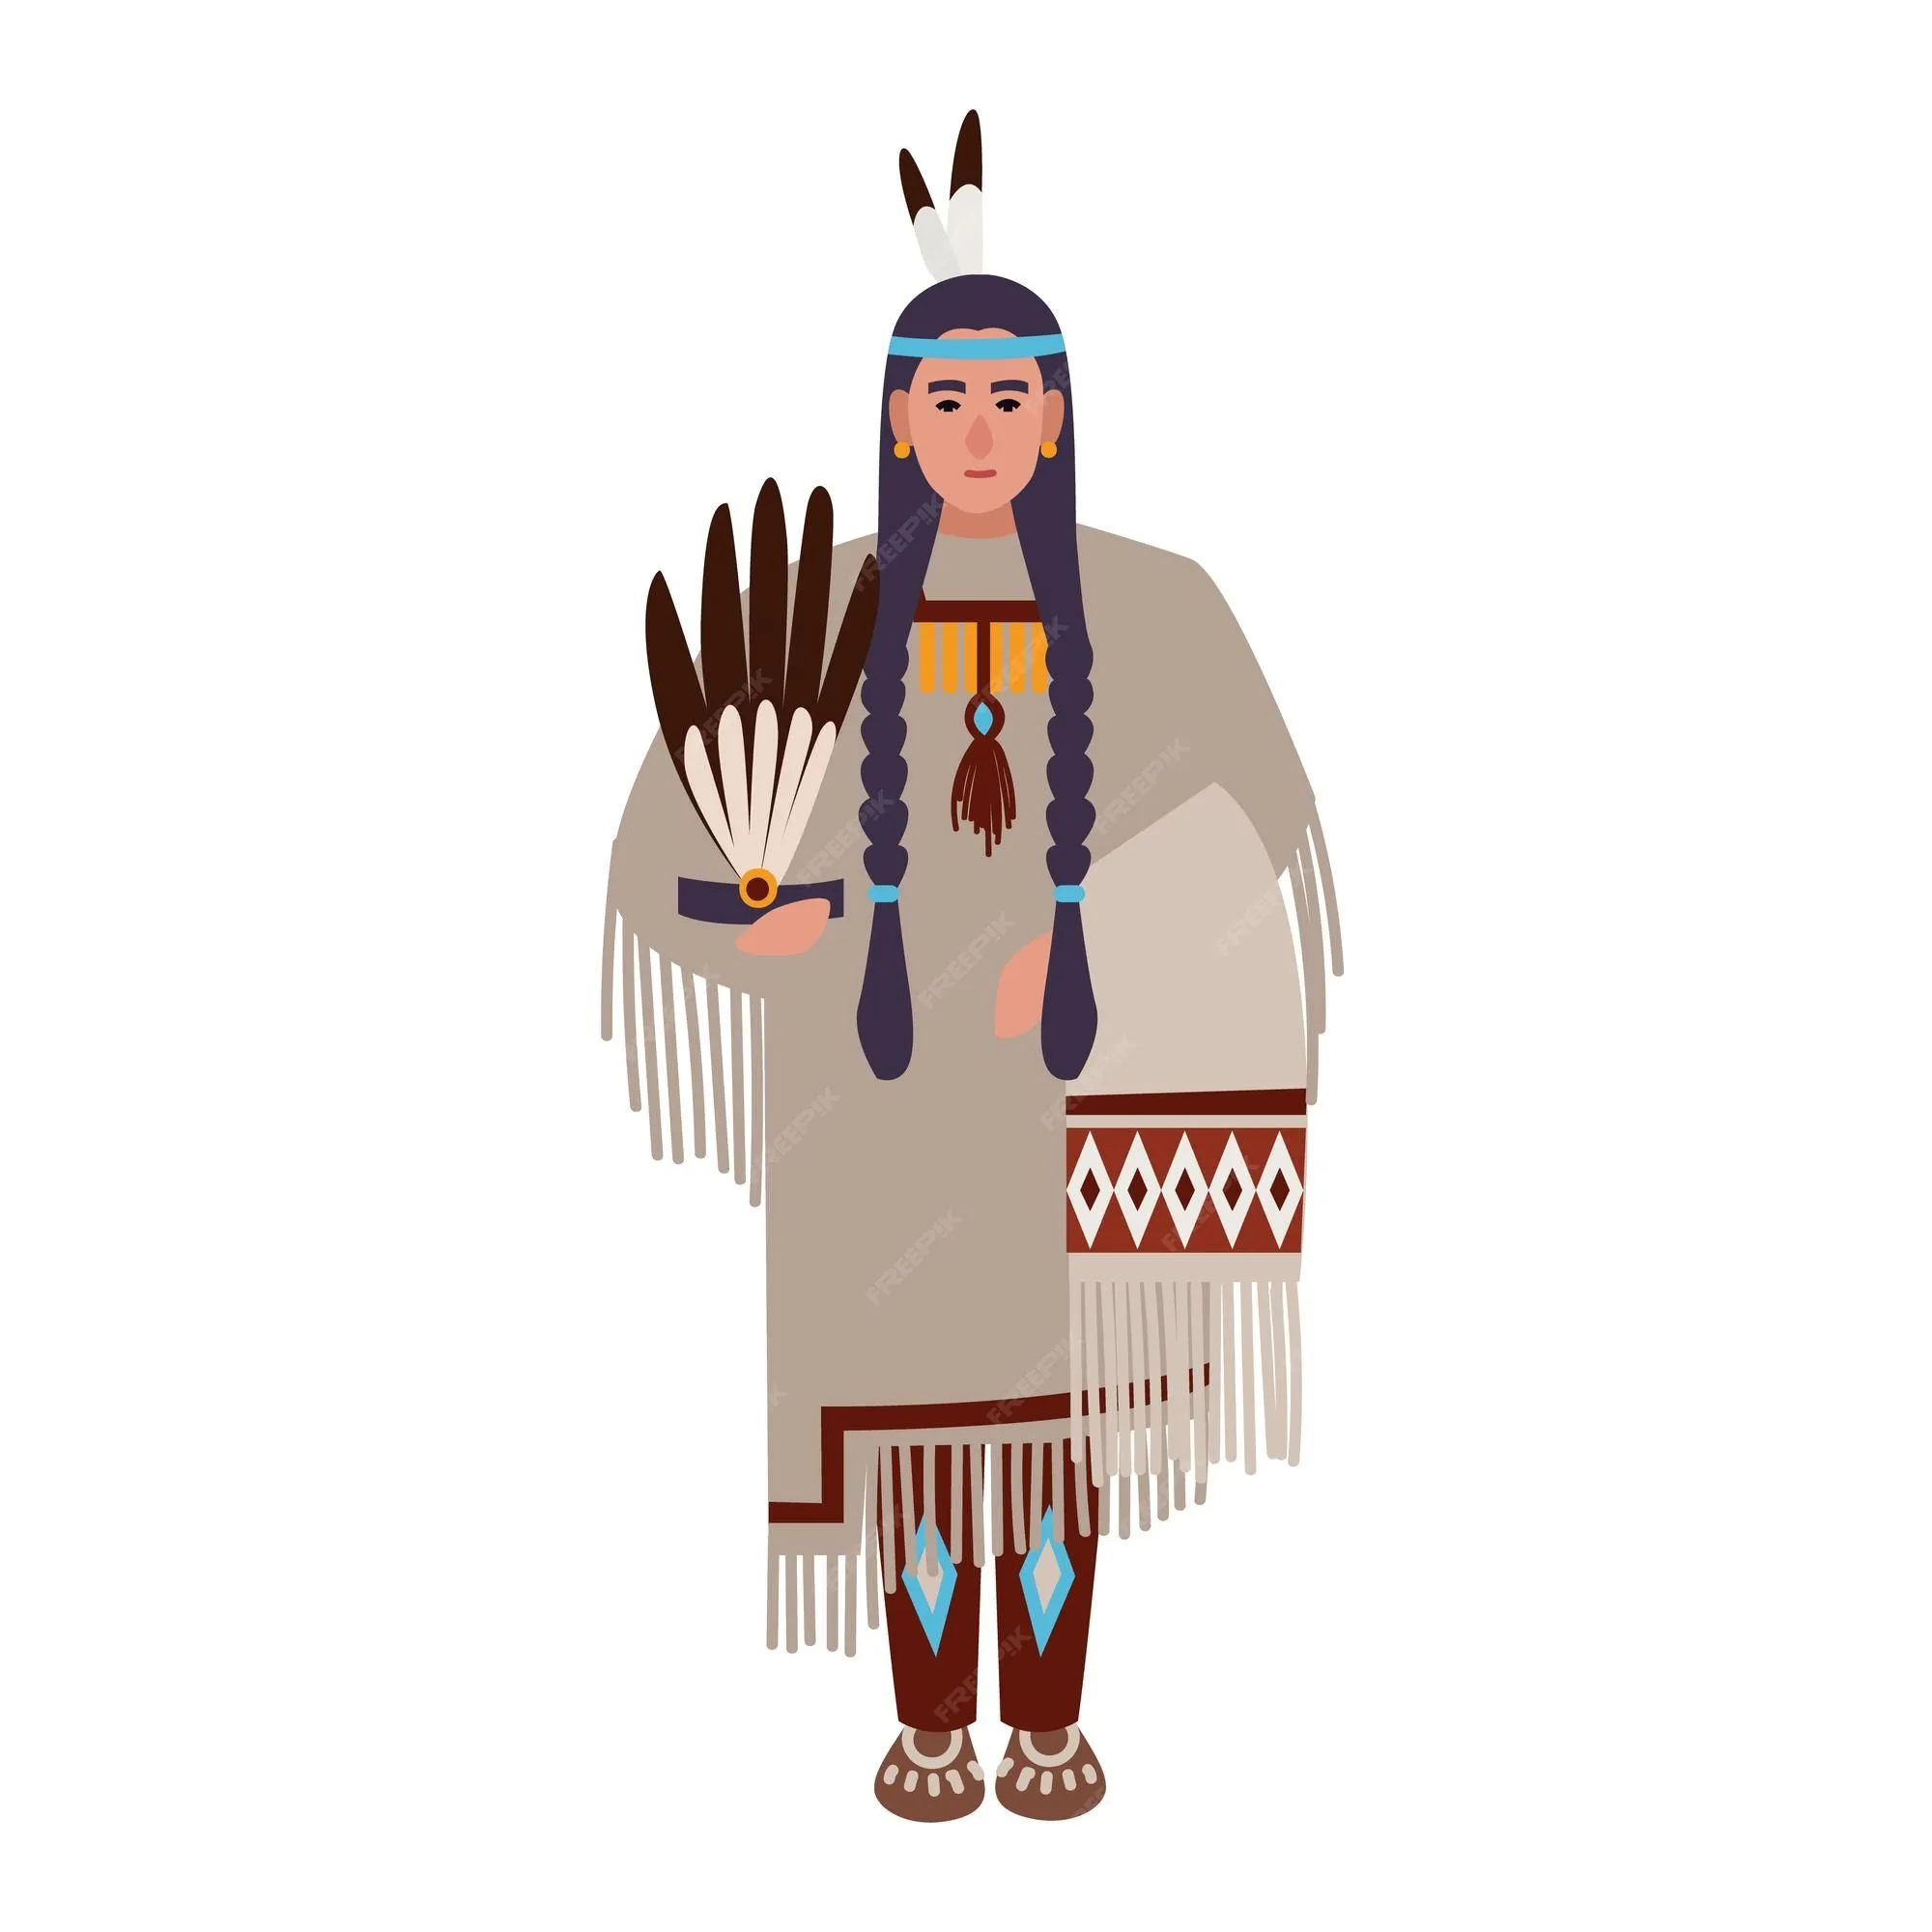 Mujer indígena americana con trenzas o india vistiendo ropas tribales  étnicas. pueblos indígenas de américa. personaje de dibujos animados  femenino aislado sobre fondo blanco. ilustración de vector plano colorido.  | Vector Premium